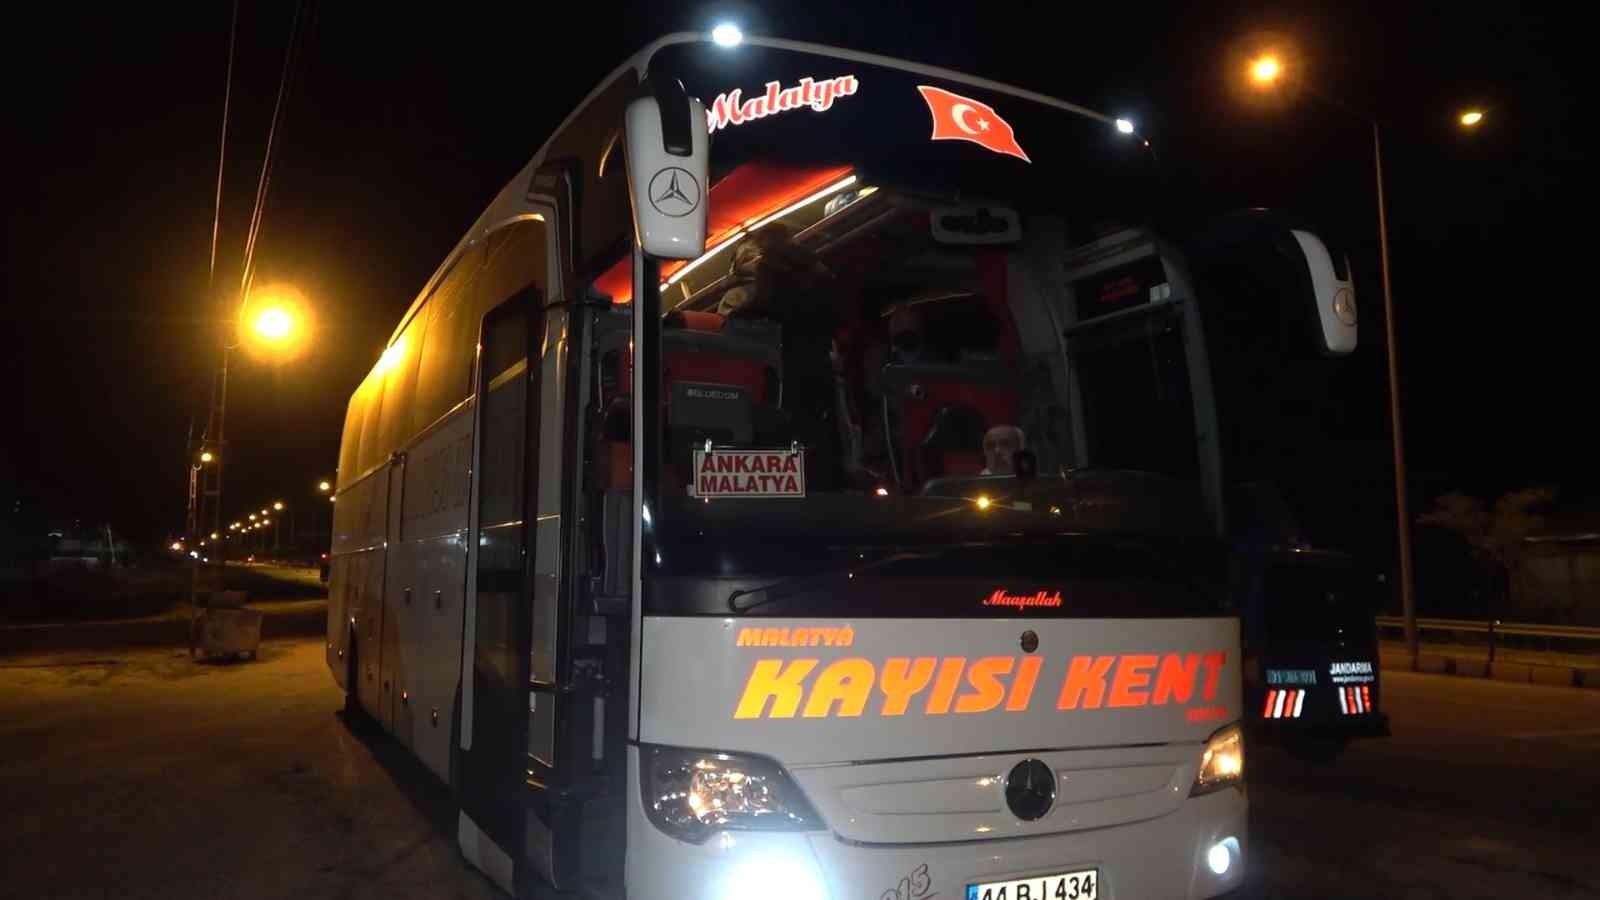 6165449b93403-Kilometrelerce yol aldı, Kırıkkale’de jandarmaya takıldı: Riskli gruptaki gence 4 bin 50 lira ceza.jpg